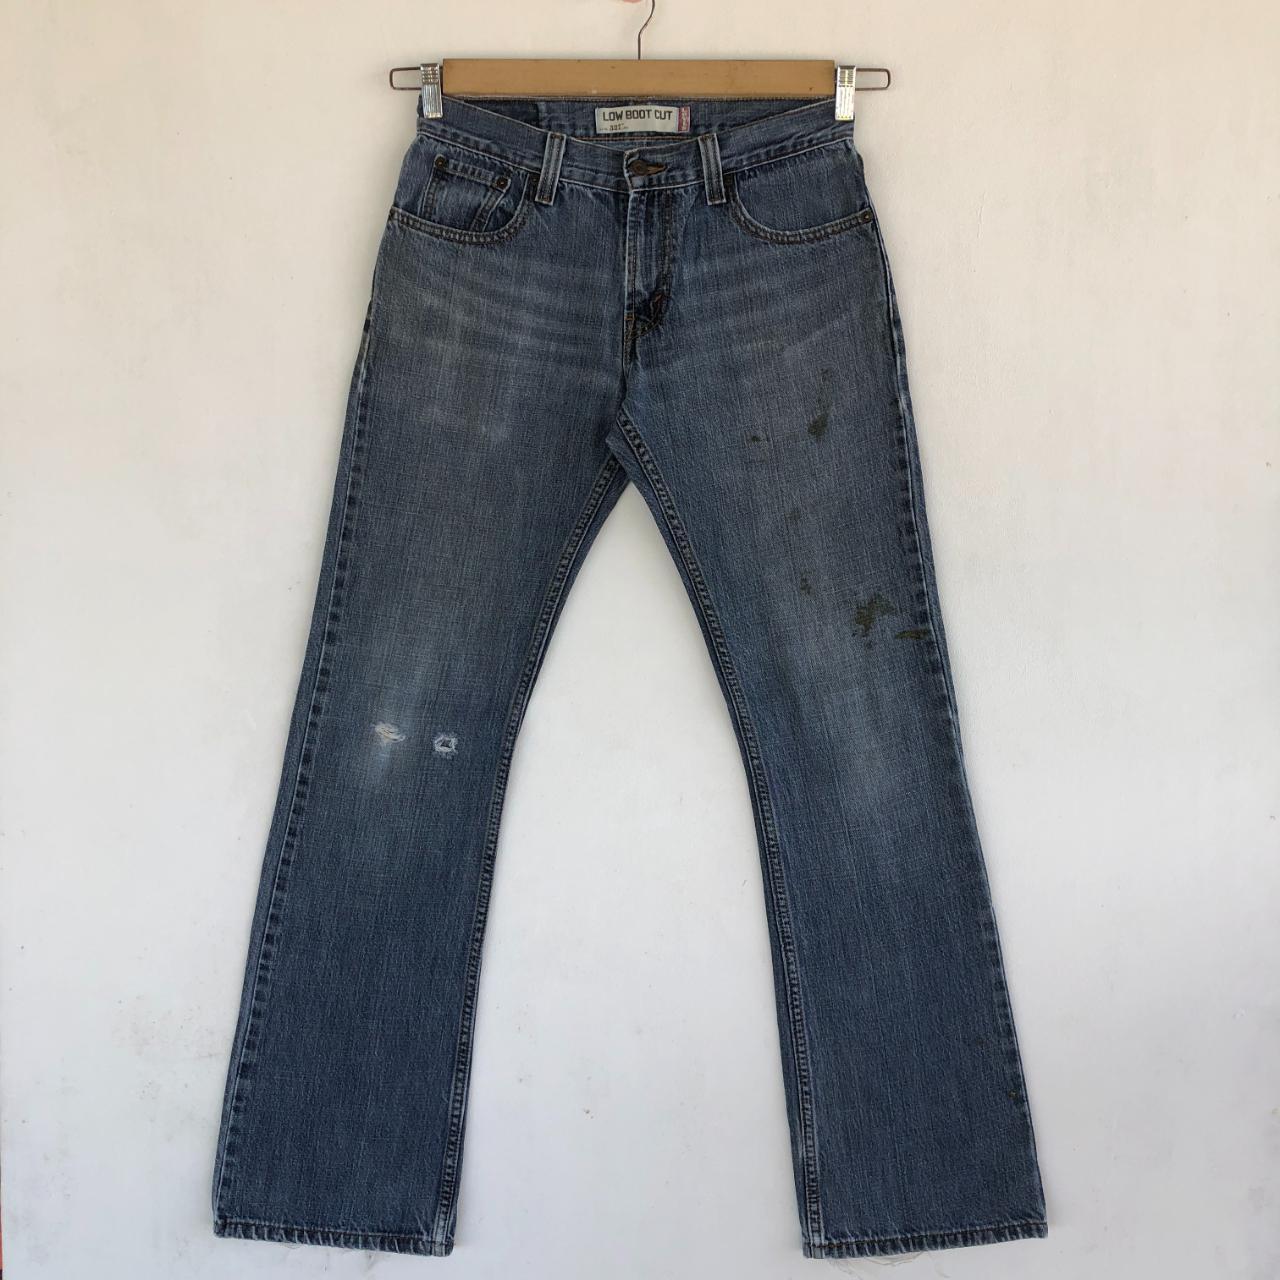 Vintage Levis Jeans Levis 527 Denim Pants Manual... - Depop